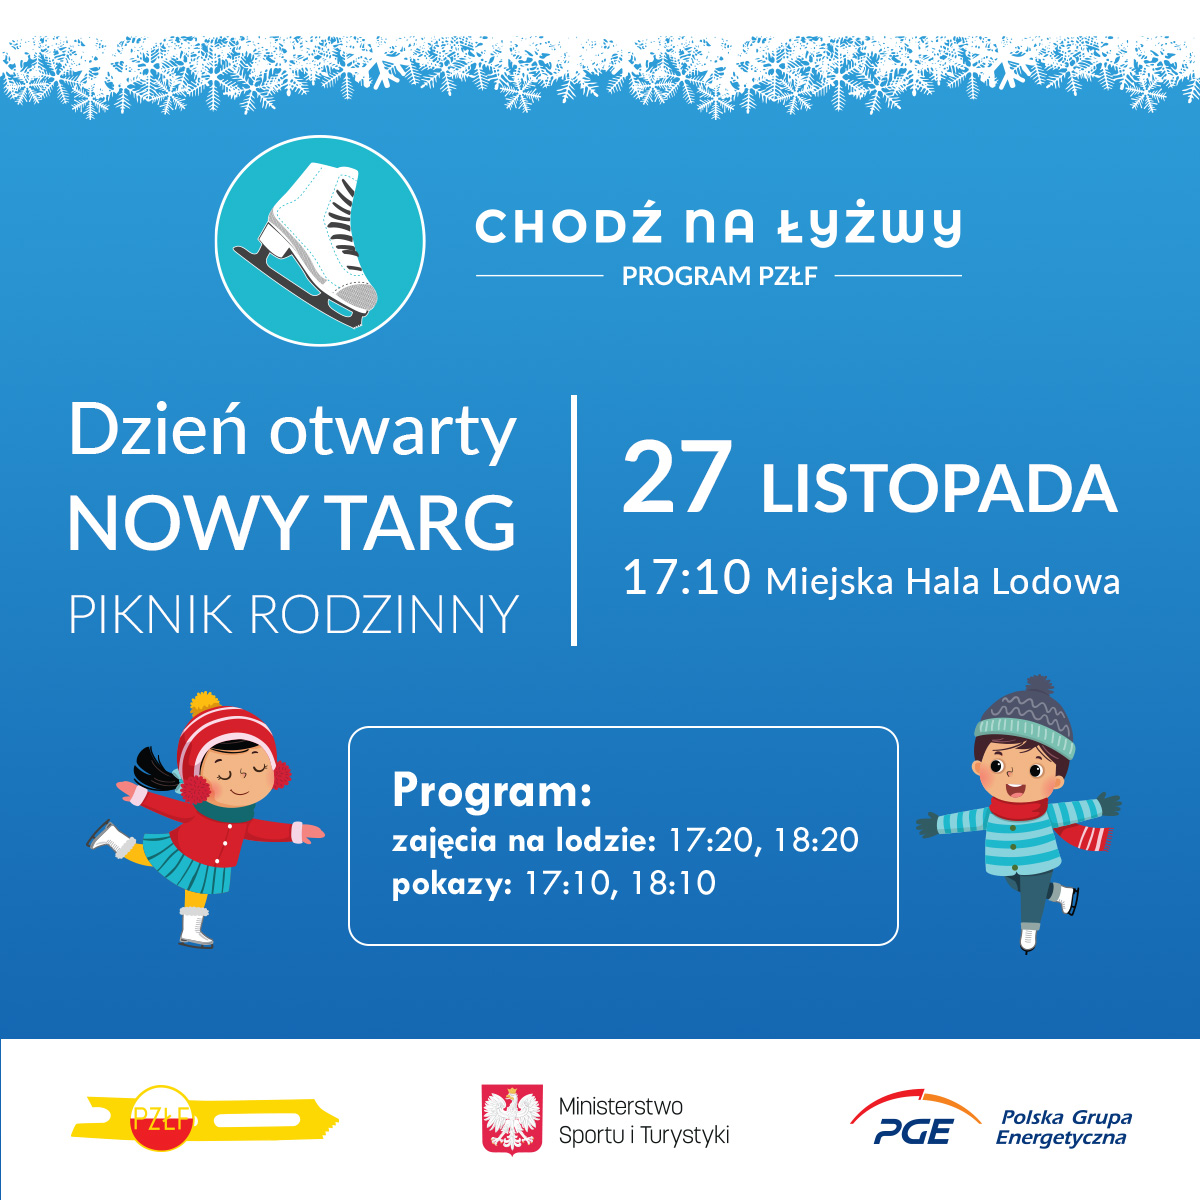 Dzień otwarty i piknik rodzinny w ramach programu „Chodź na Łyżwy” 27 listopada w Nowym Targu